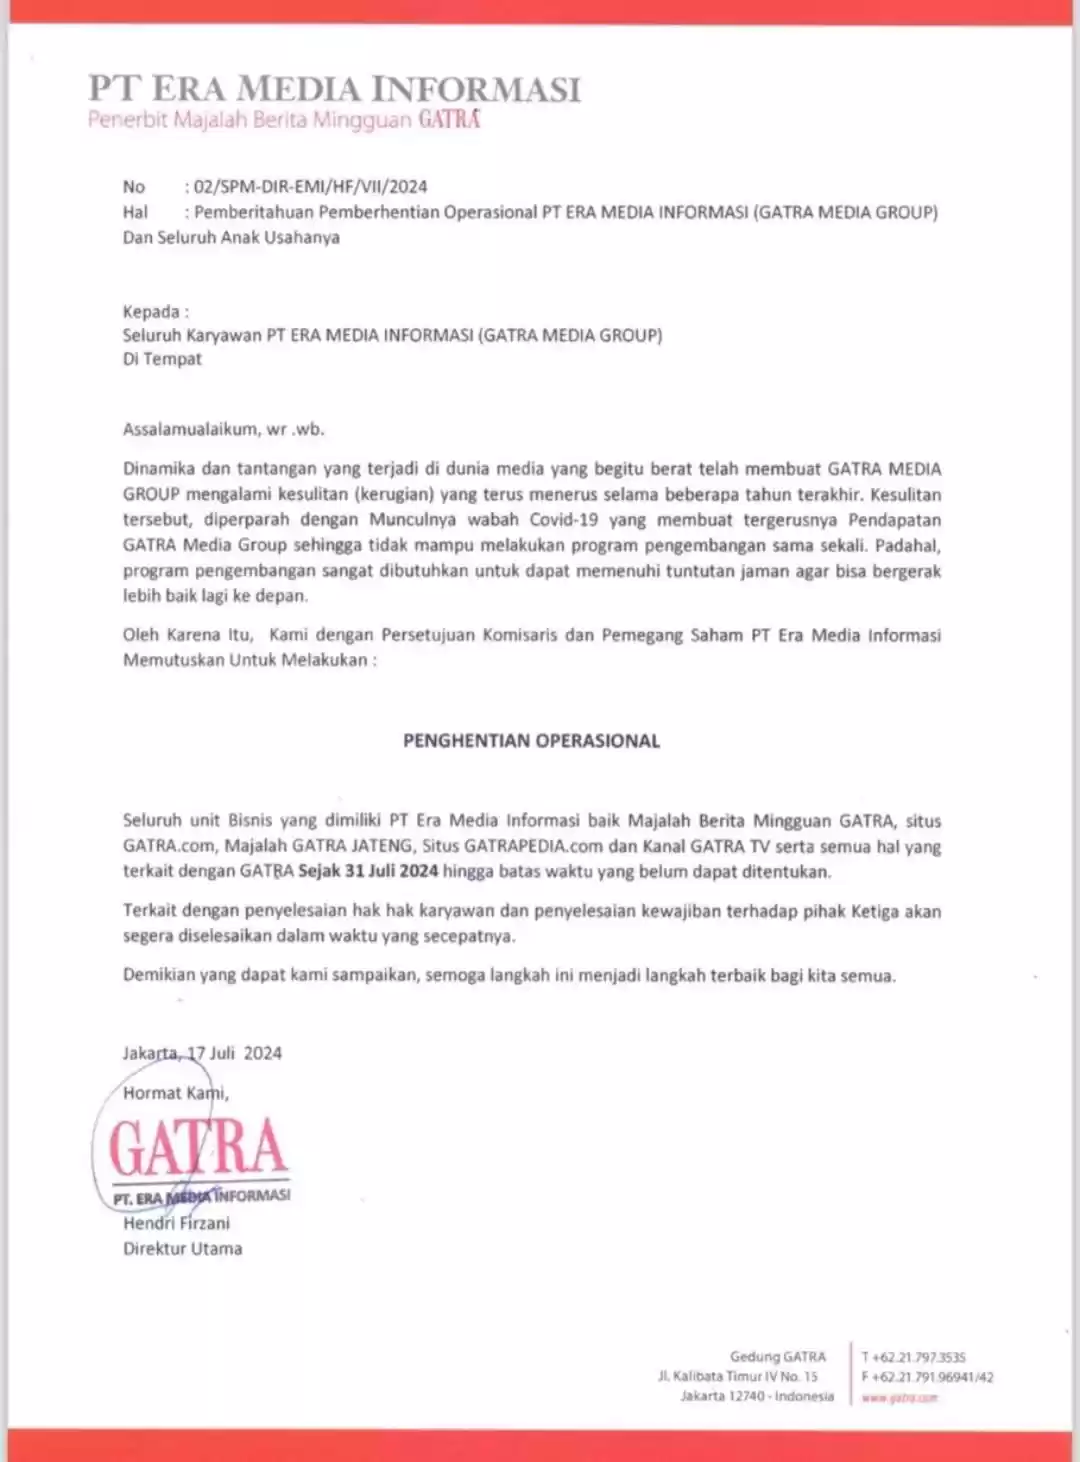 Surat Edaran Penghentian Operasional Gatra Media Group (Foto: Dok MI/Gatra.com)